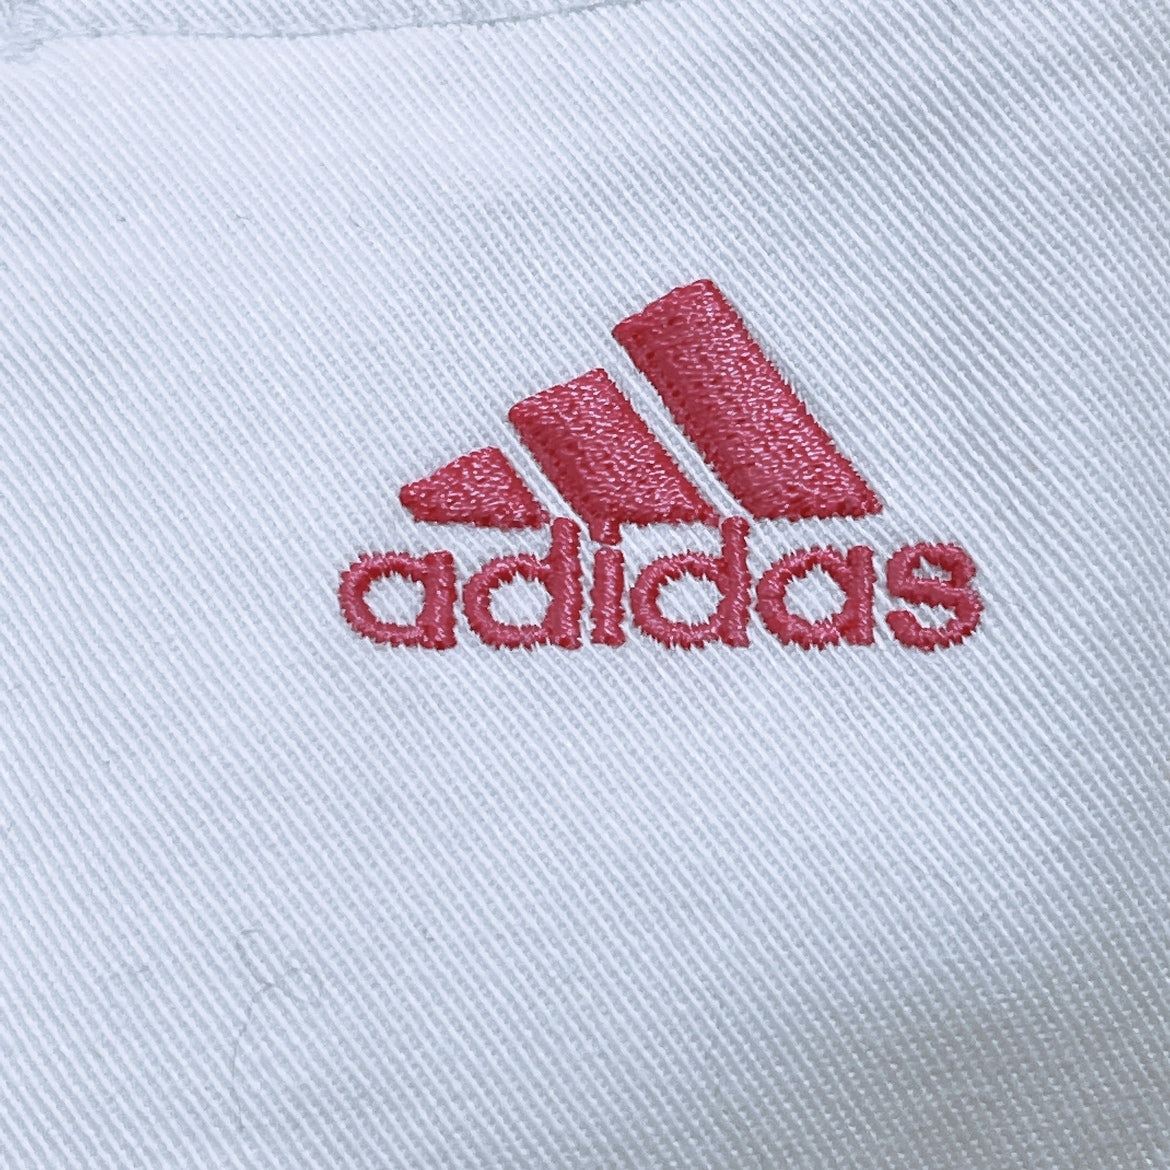 レディースL adidas 長ズボン カジュアルパンツ ボトムス 白 ホワイト ピンク カジュアル オールシーズン アディダス 【21019】